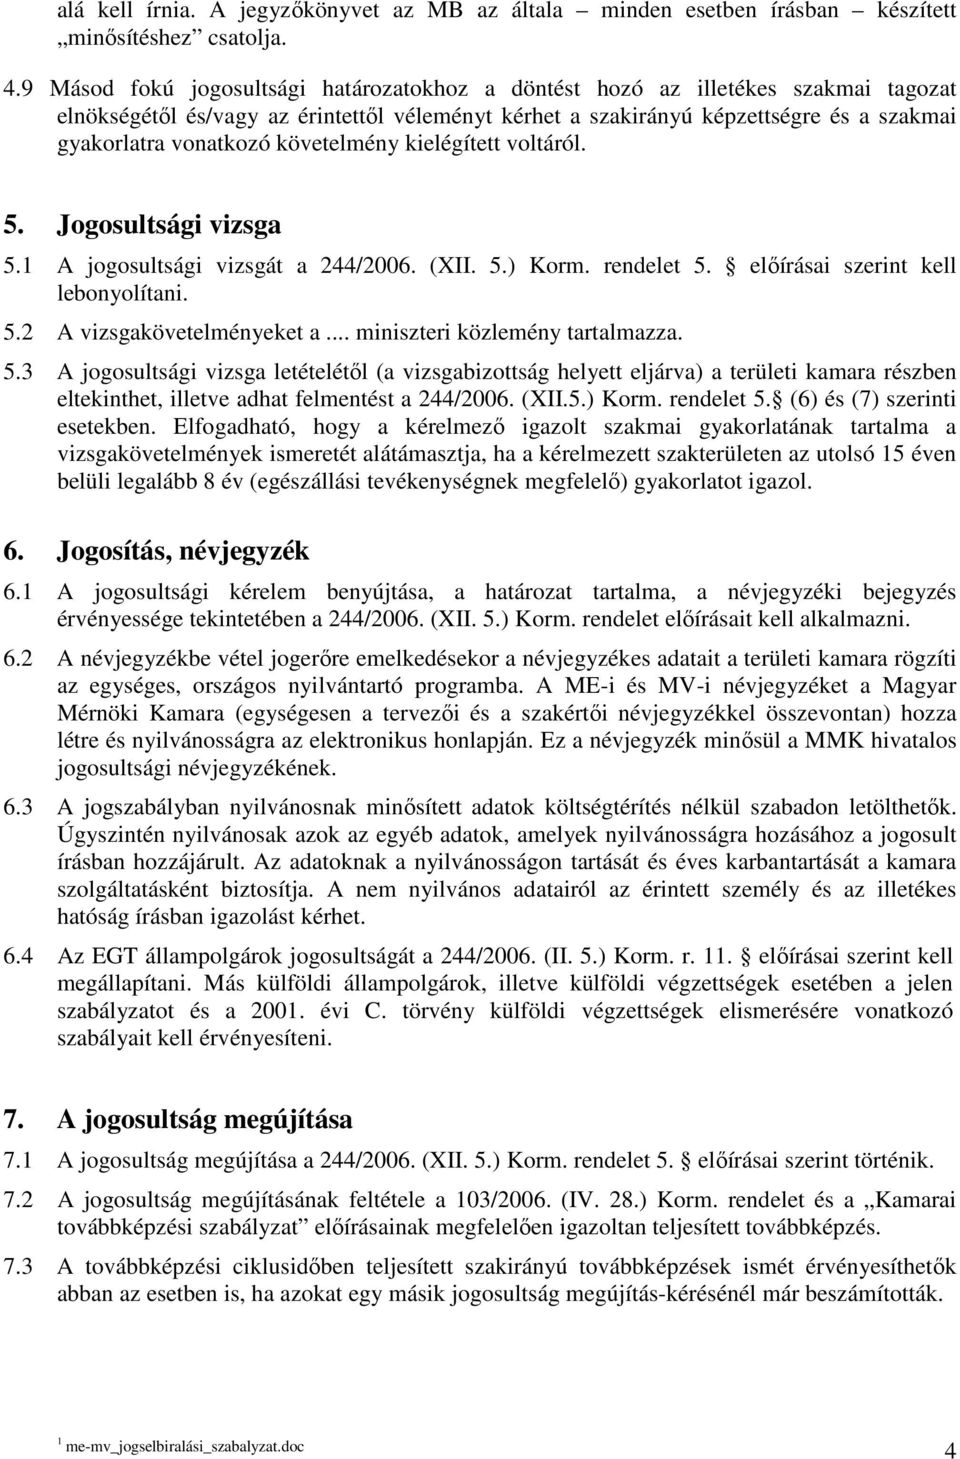 2. A Magyar Mérnöki Kamara illetékességében kapható jogosultságok - PDF  Free Download